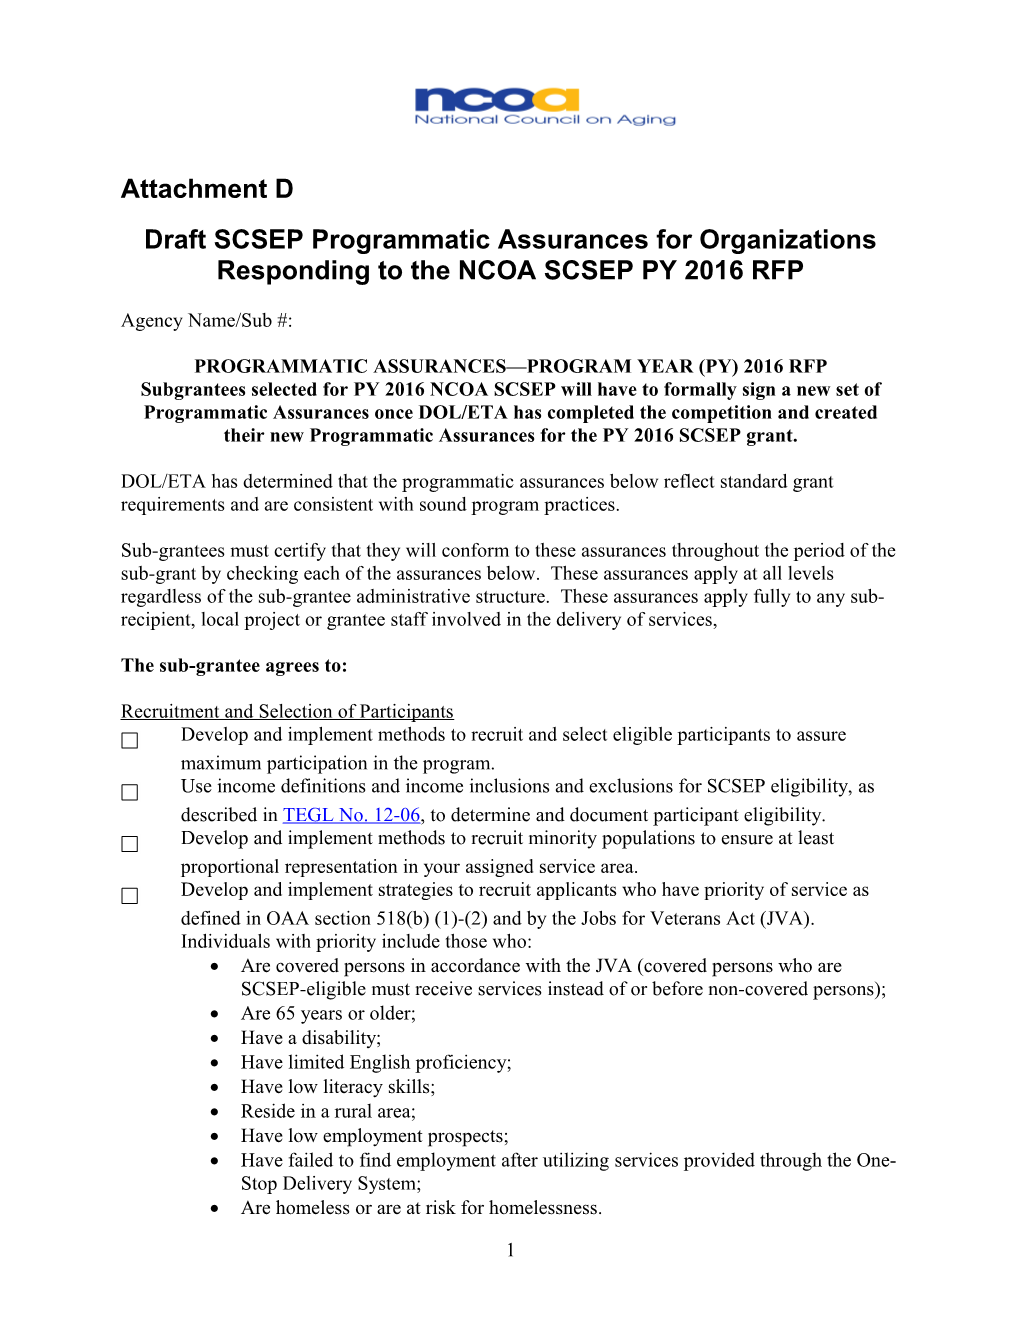 Programmatic Assurances Py 2010 Grant